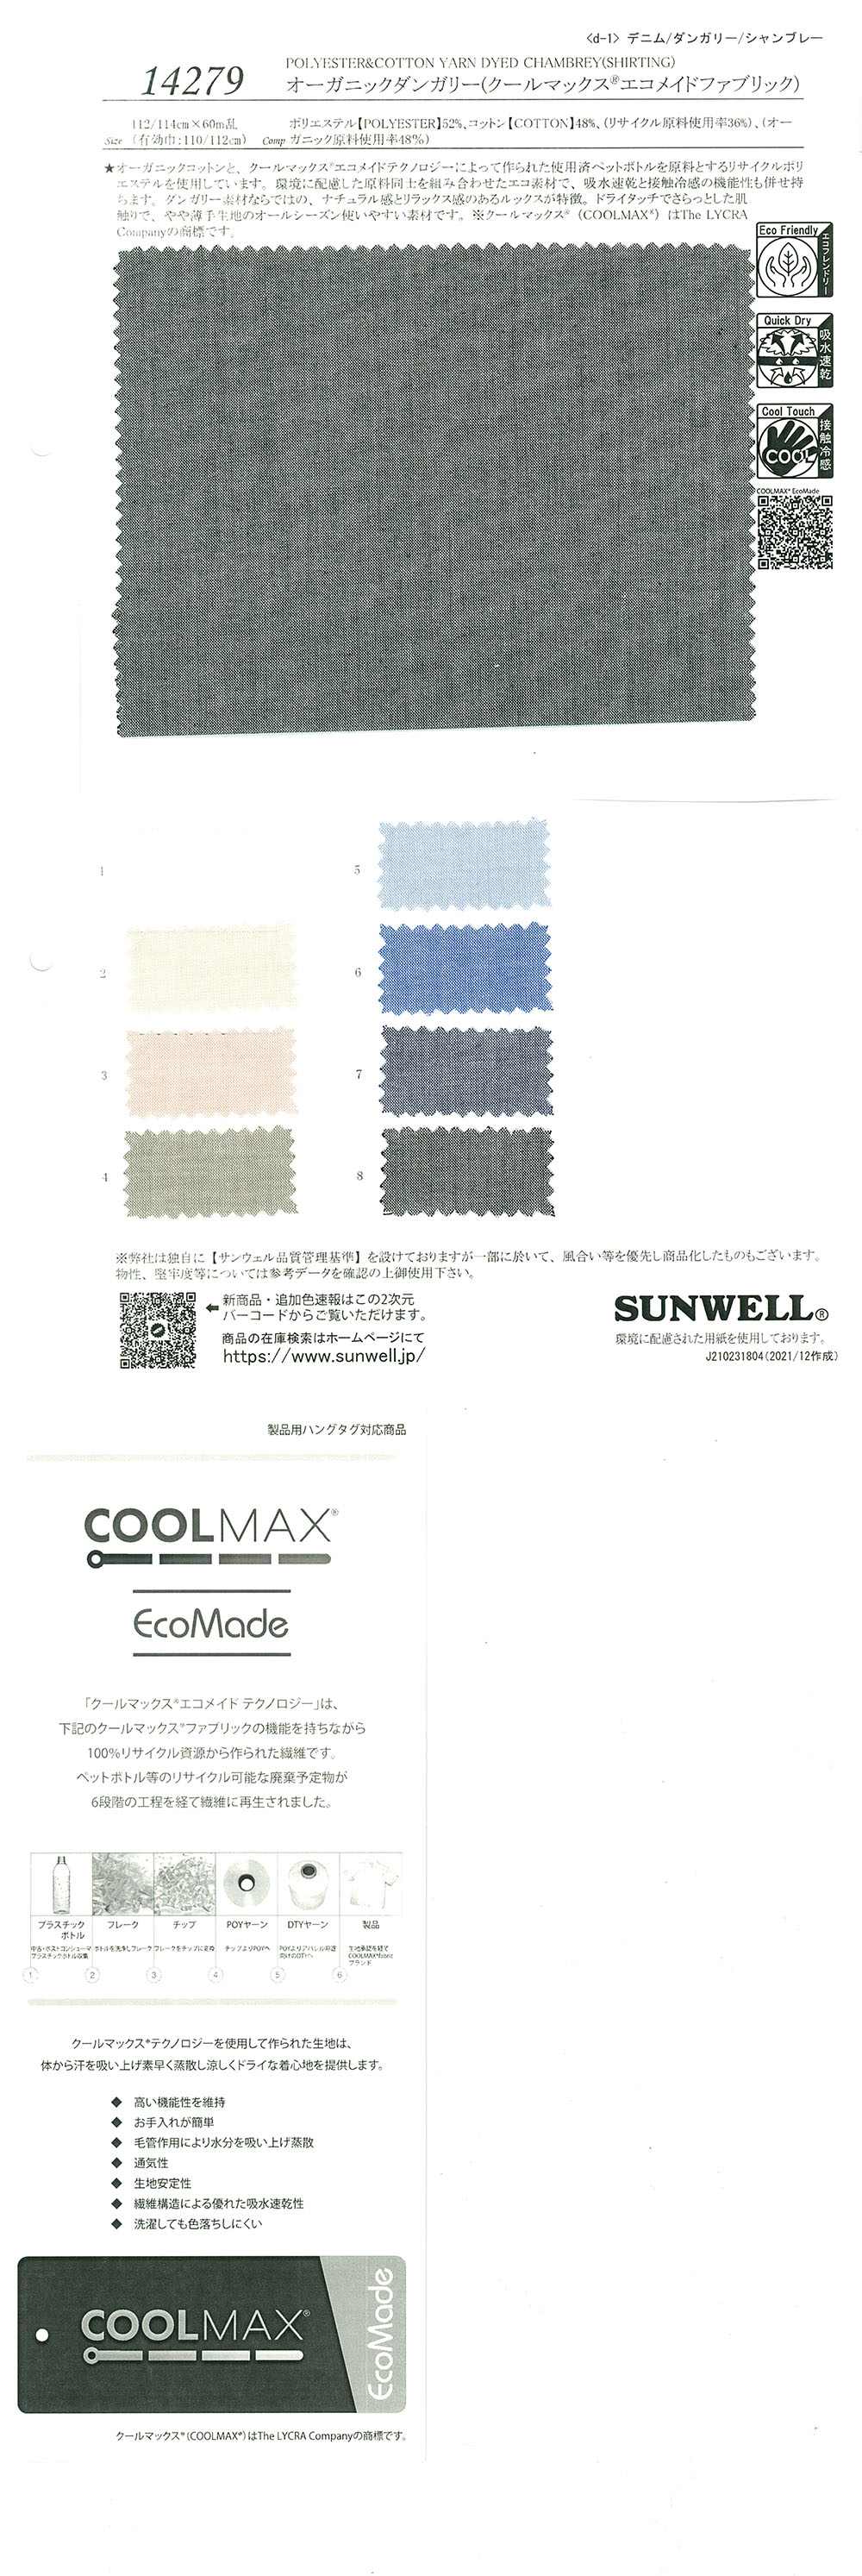 14279 Macacão Orgânico (Tecido Coolmax(R) Ecomade)[Têxtil / Tecido] SUNWELL